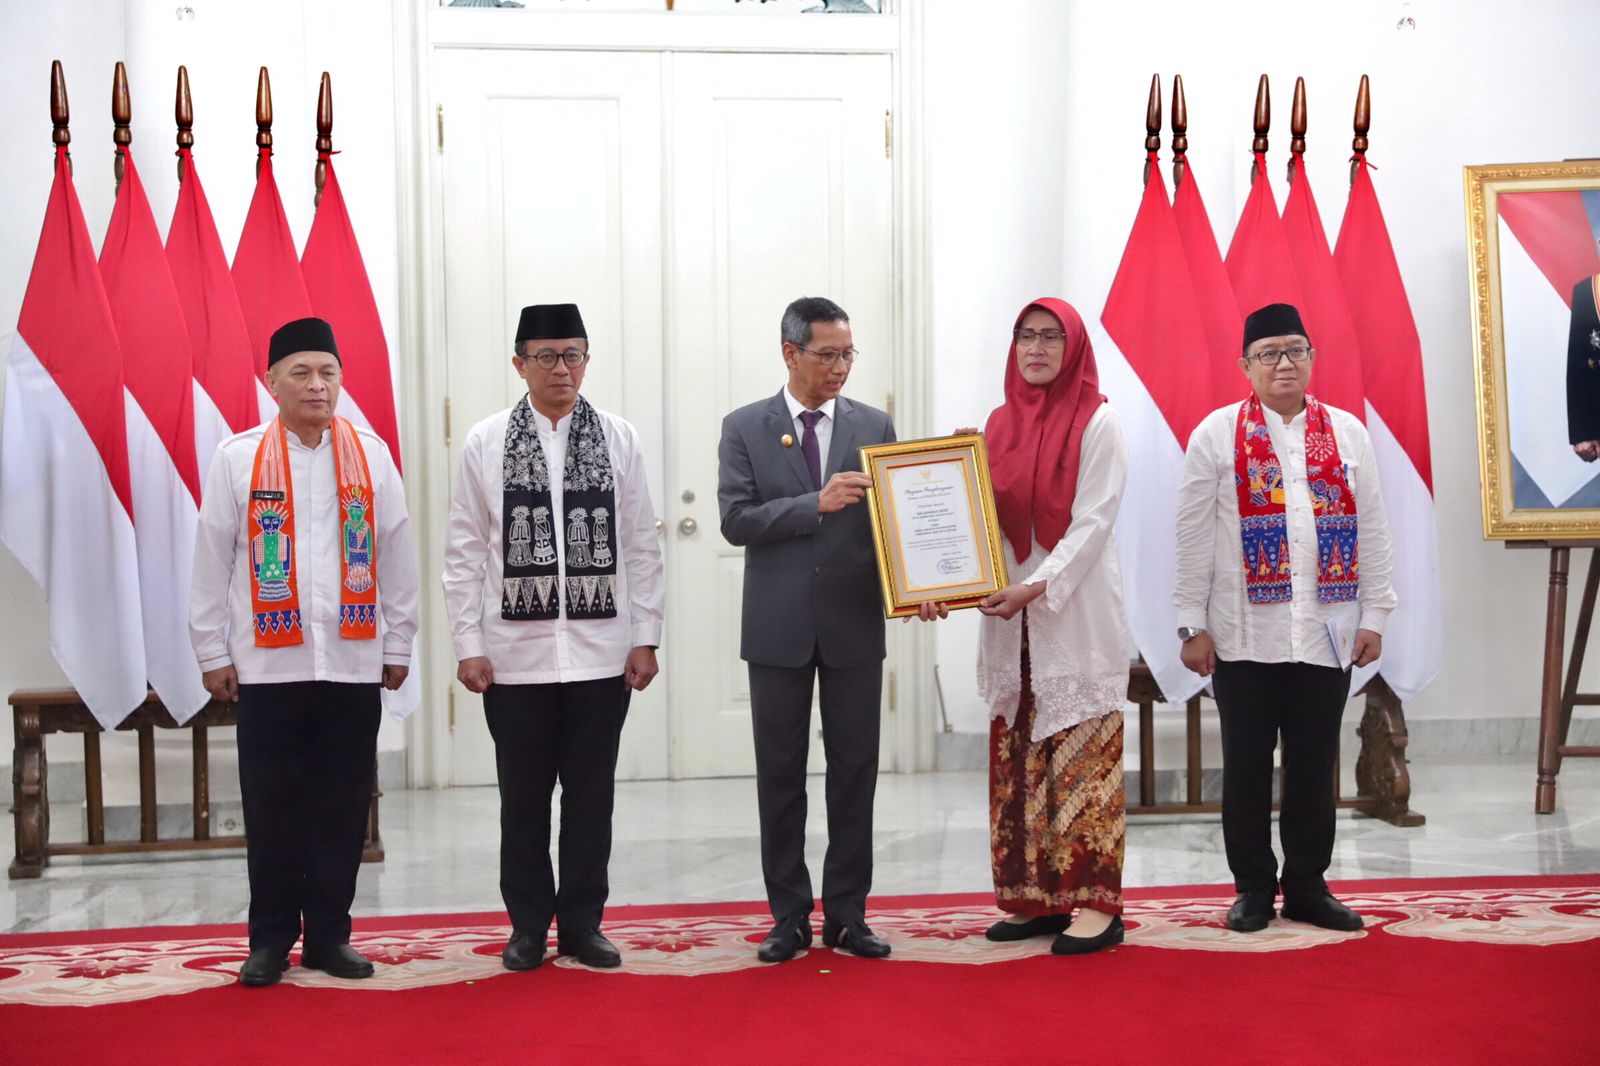 Pj Gubernur Serahkan Penghargaan Kepada Kelurahan Cikini Sebagai Juara Lomba Jakarta Gotong Royong